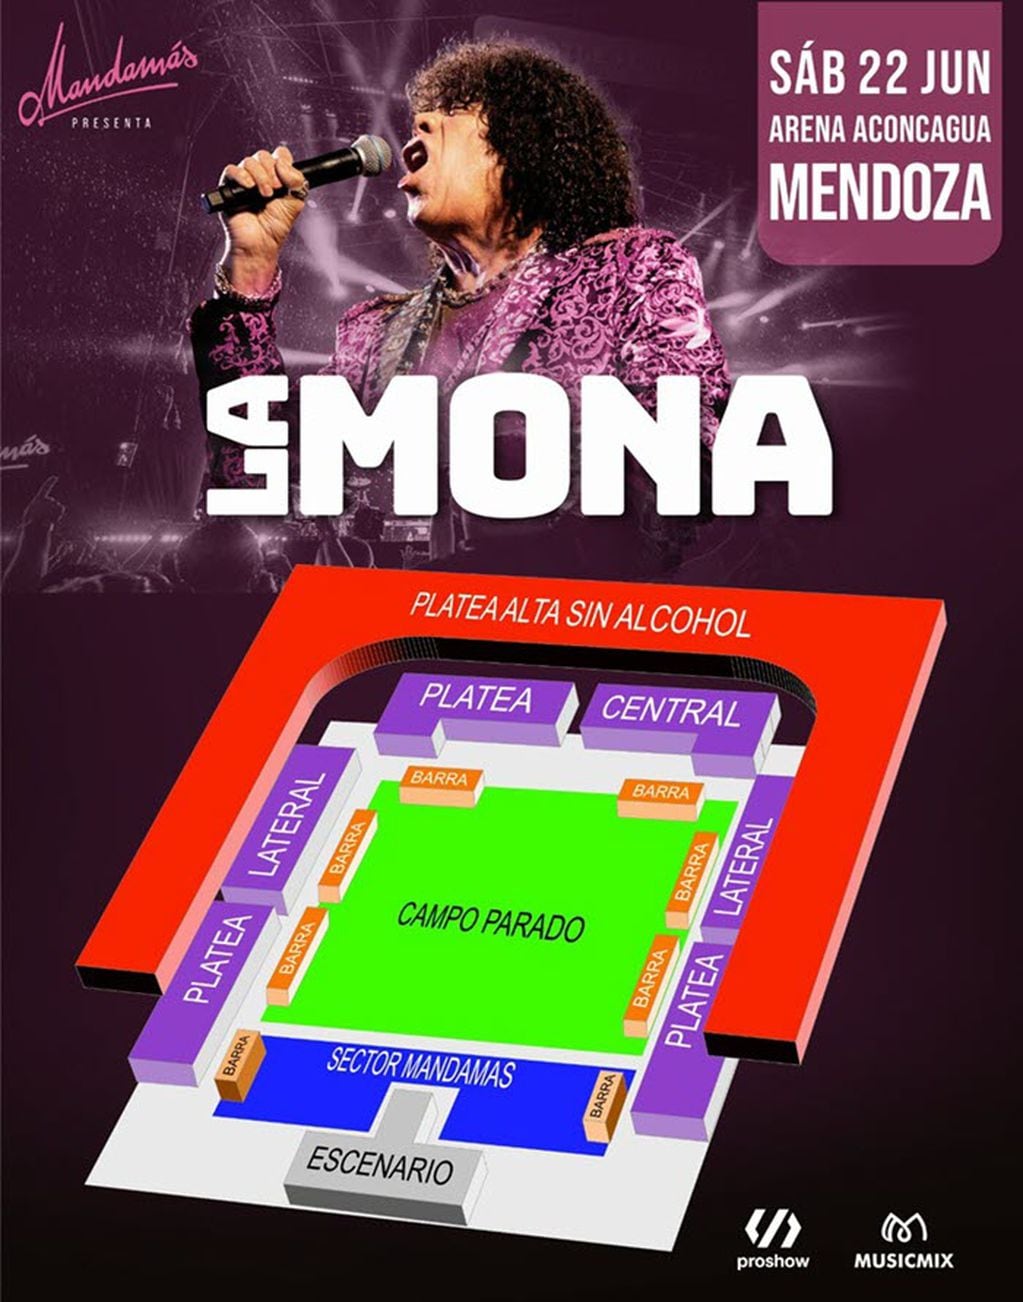 La Mona en Mendoza